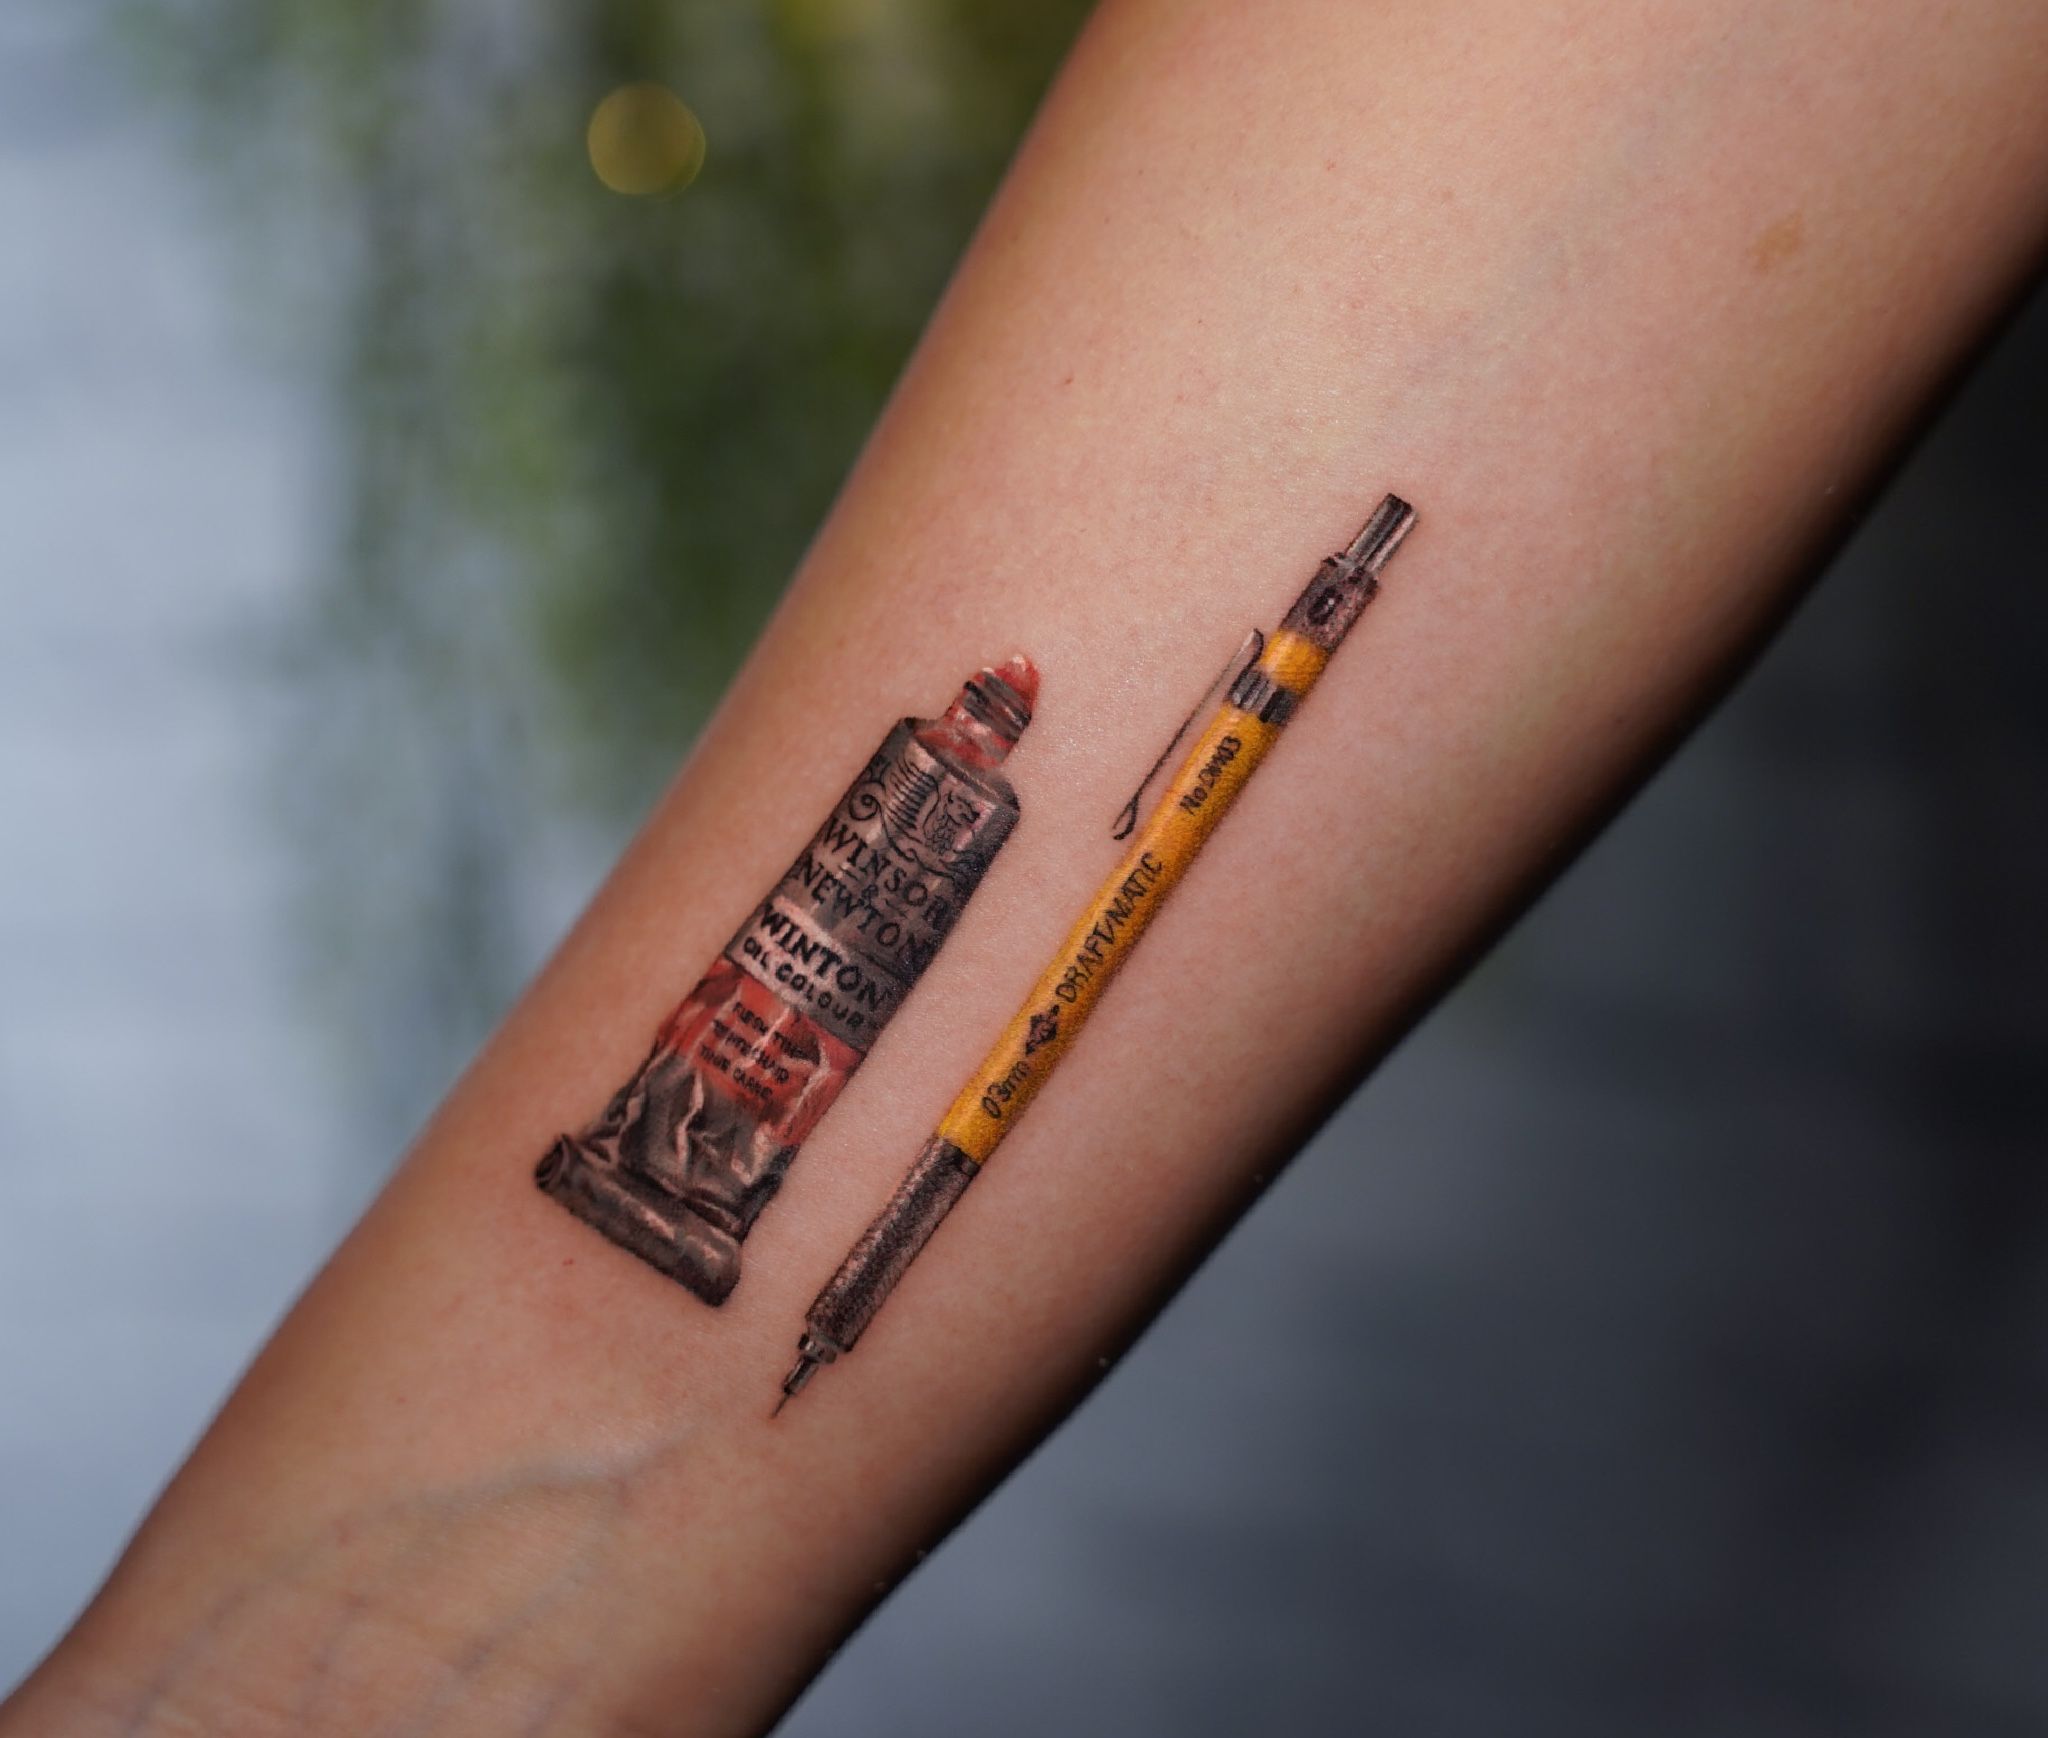 Clarinet keys done by Joel @ Empyrean Tattoo in Atlanta | Tattoo designs,  Music tattoo designs, Tattoos